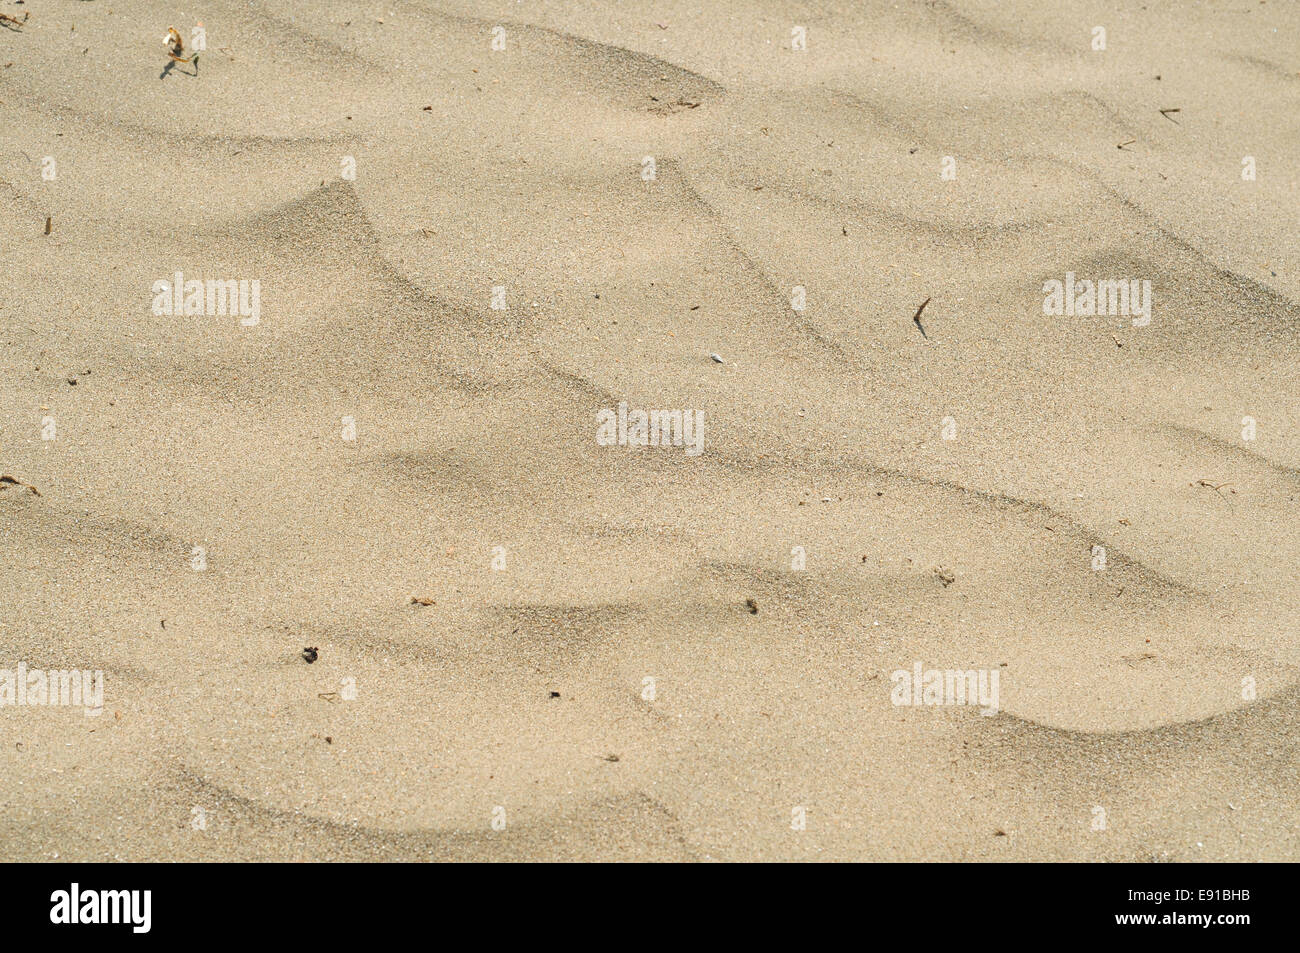 Hell gelblich Sand typisch für einige Teile der Region Northland auf der Nordinsel Neuseelands bilden kleine Dünen in der Wüste Land. Stockfoto